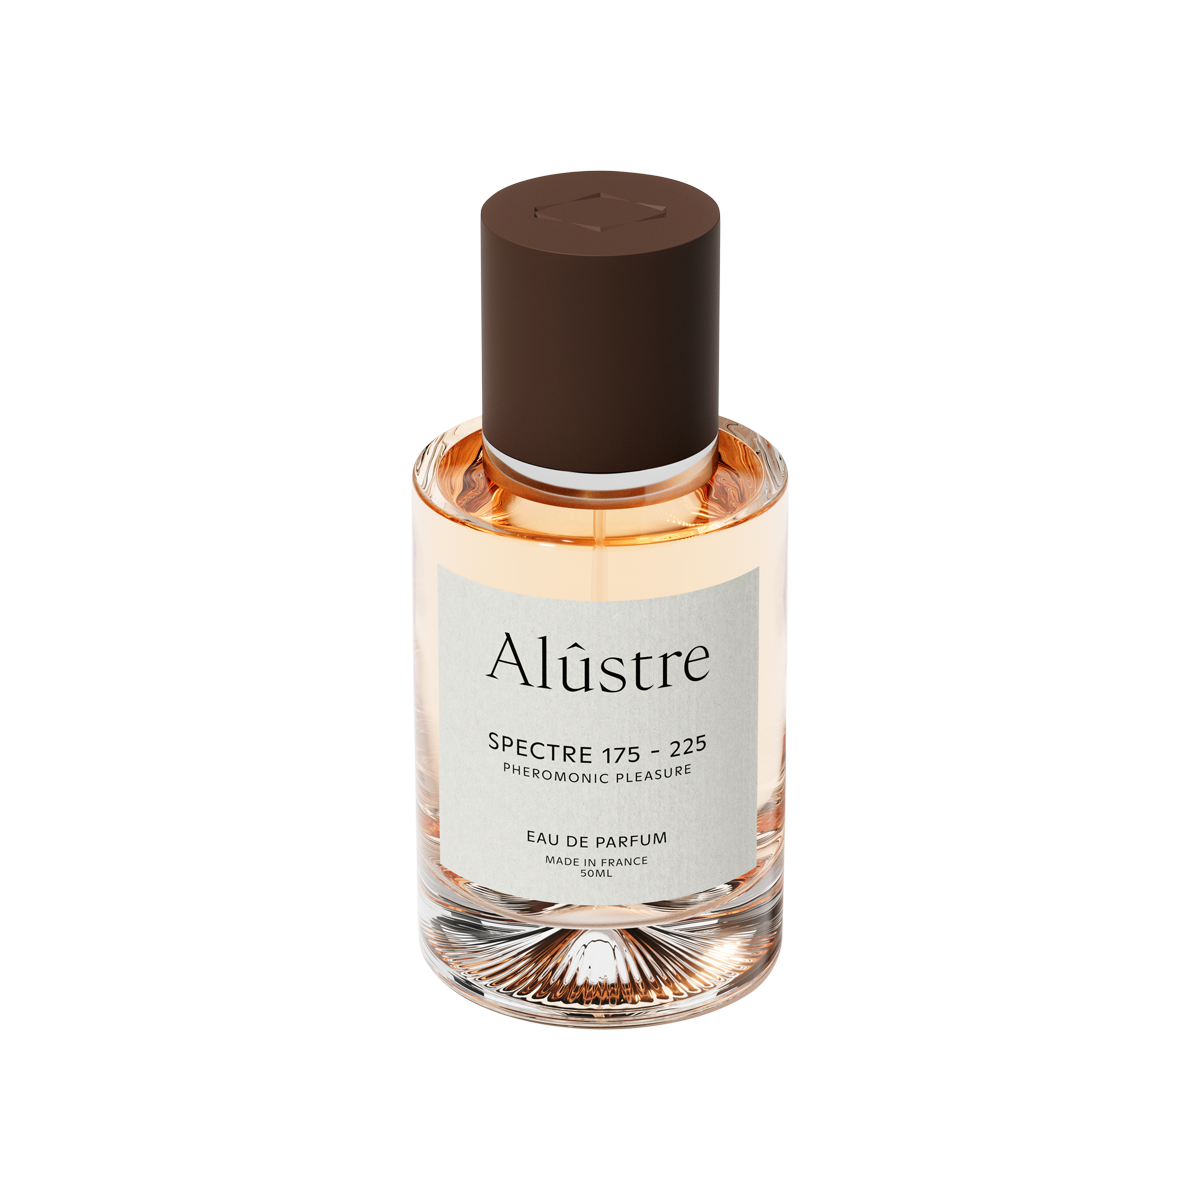 Alûstre - Spectre 175 - 225 Eau de Parfum